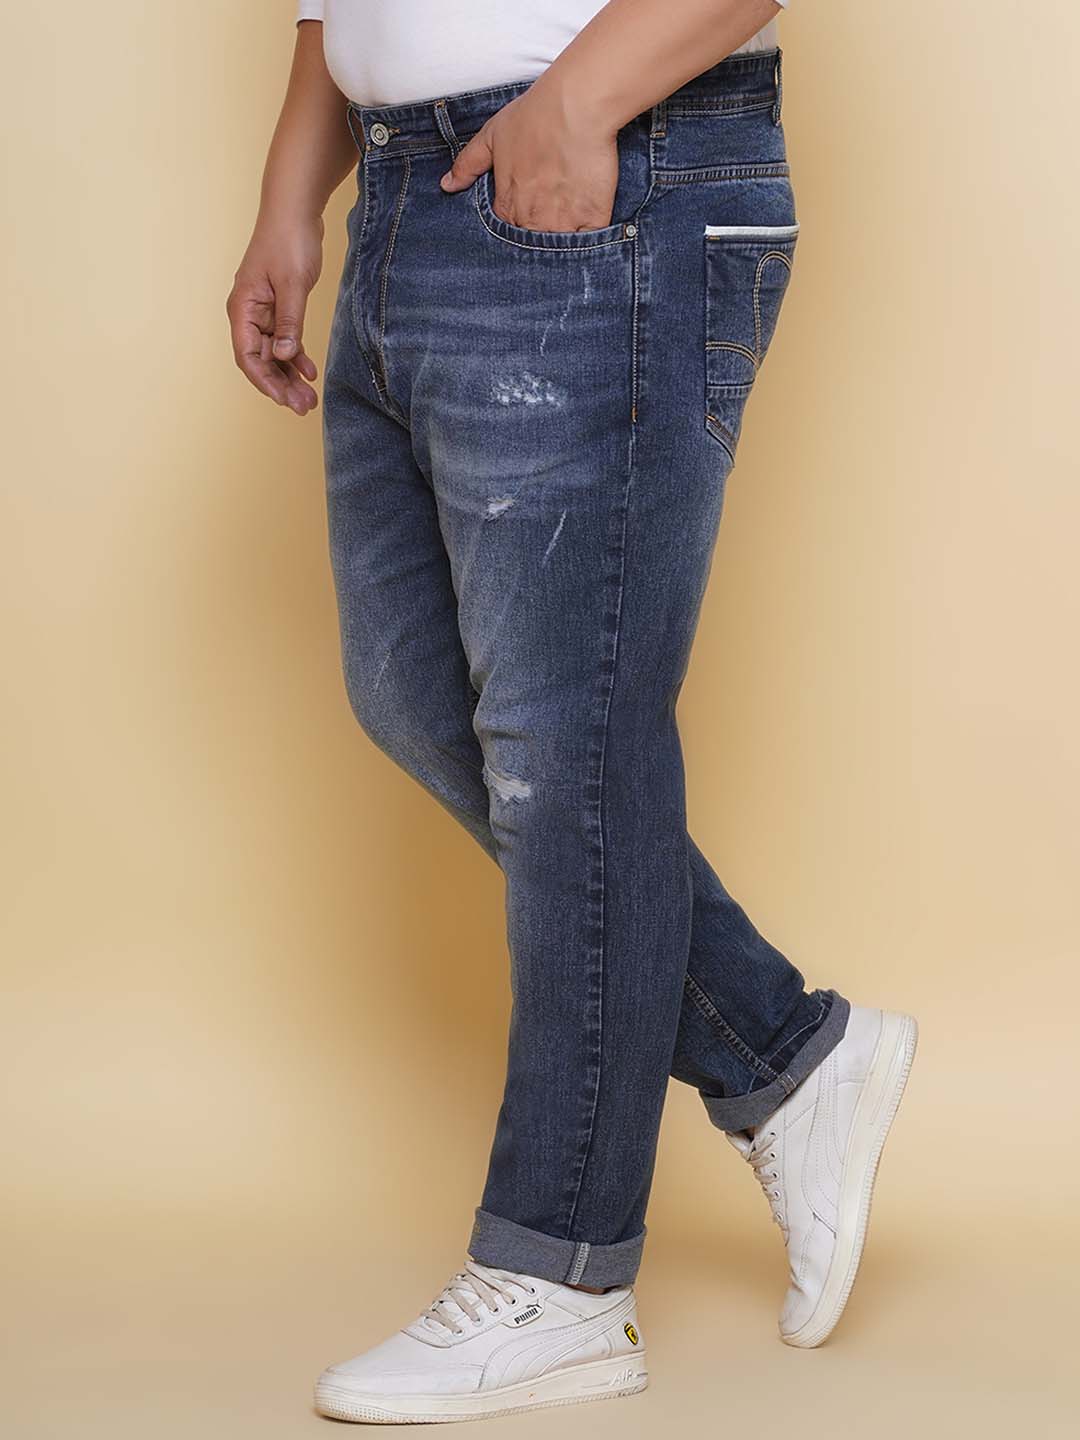 bottomwear/jeans/EJPJ25133/ejpj25133-4.jpg